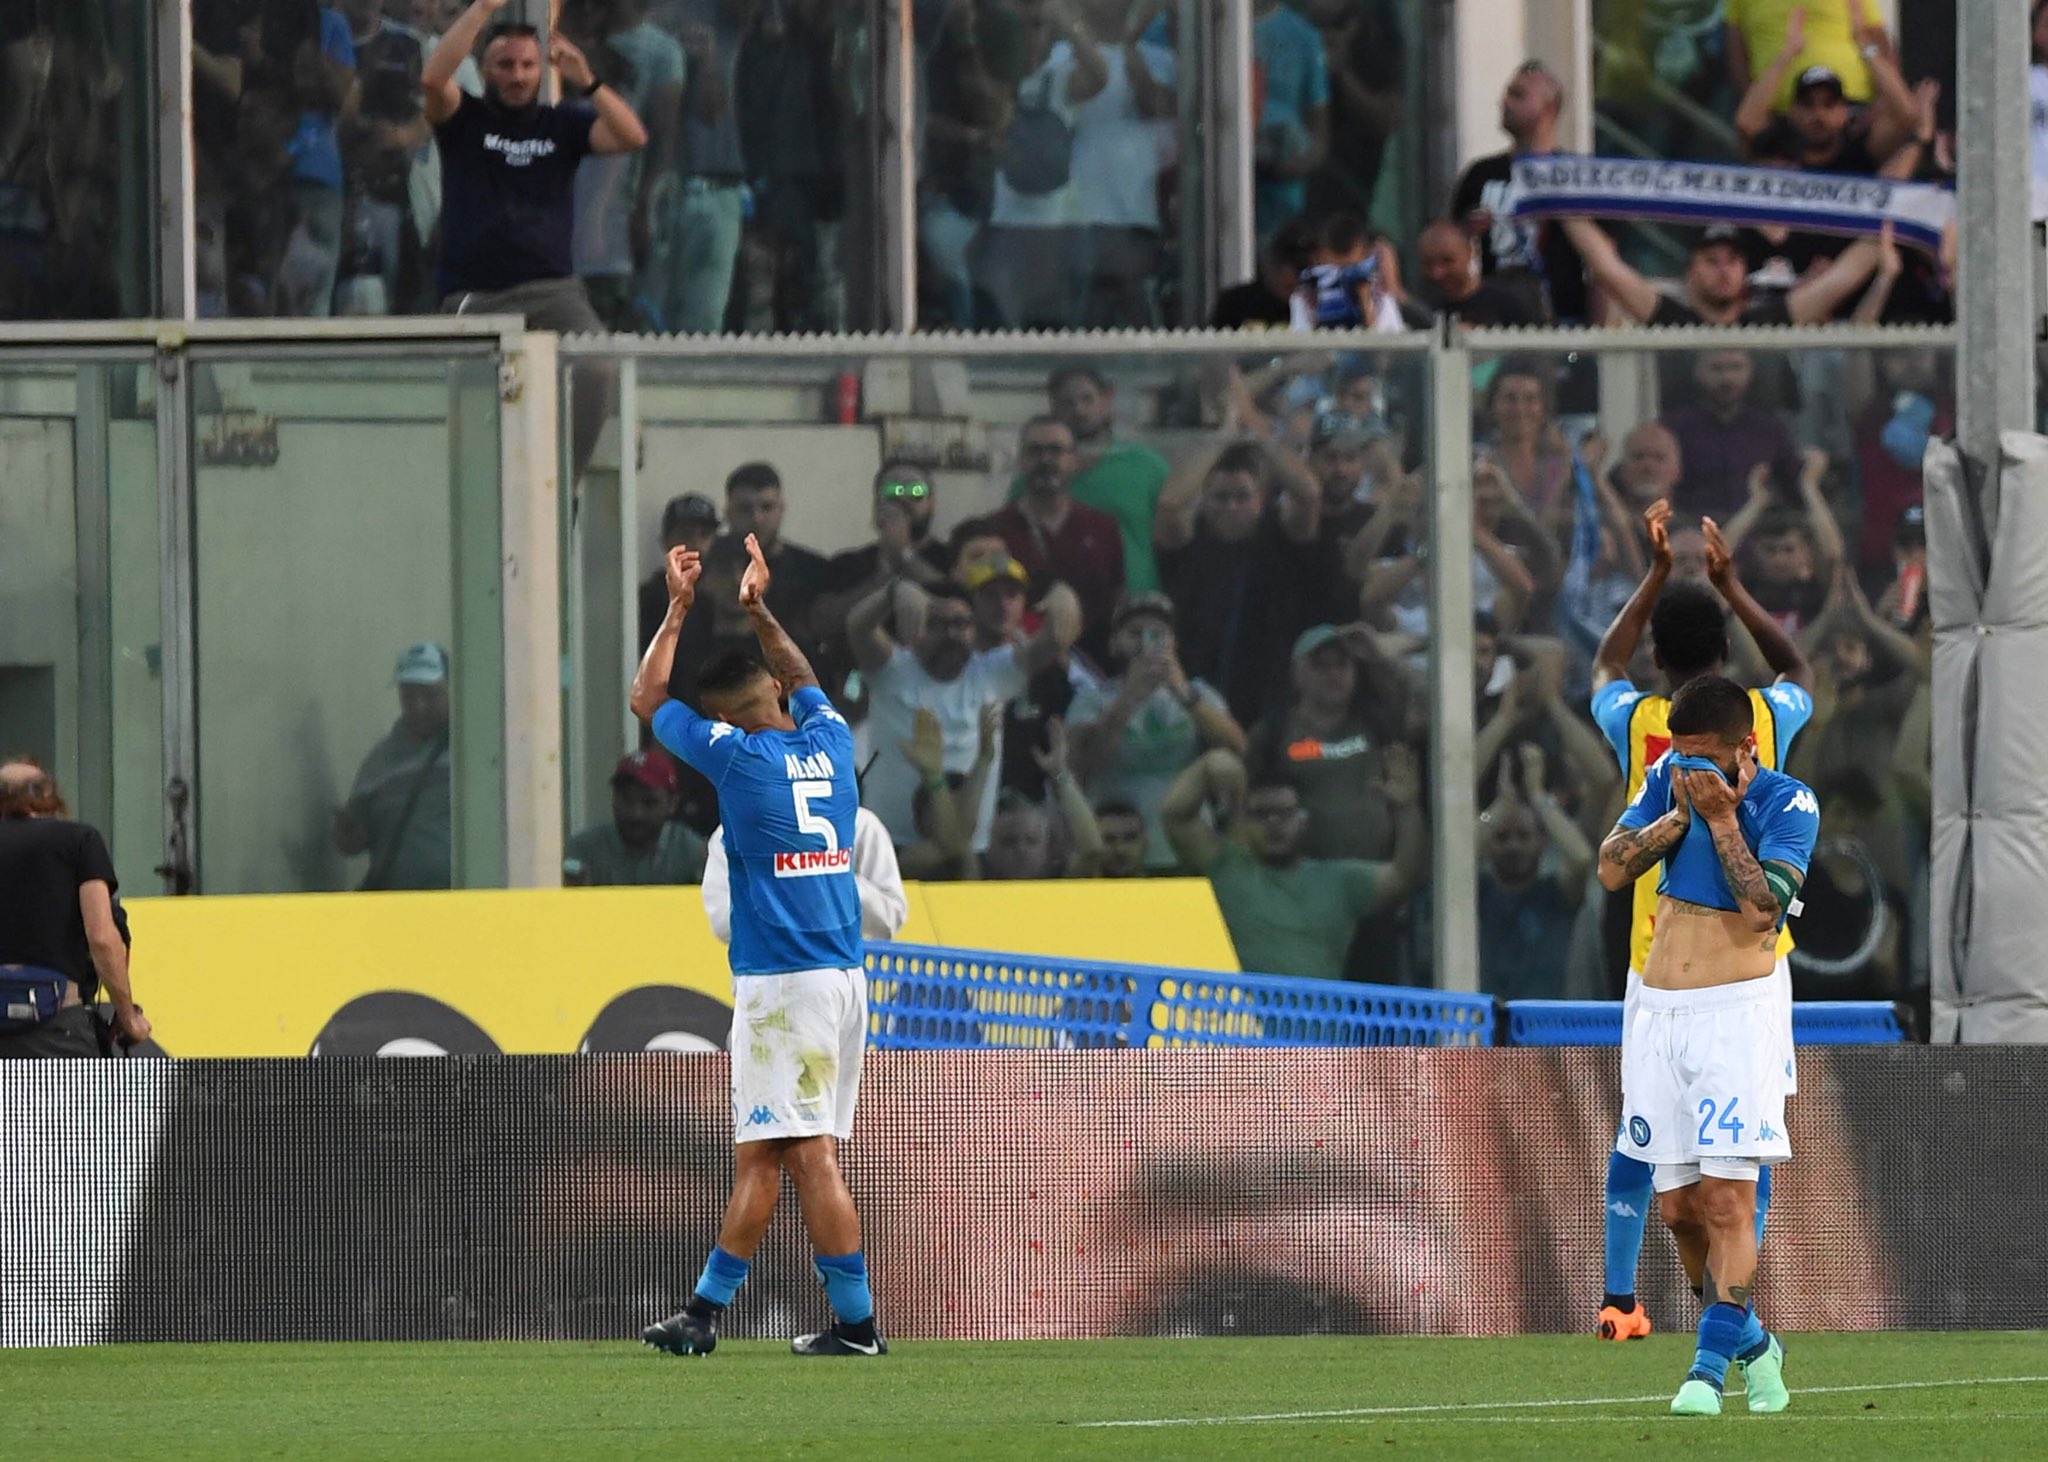 Il Napoli rompe il silenzio: ‘La sconfitta va accettata con orgoglio quando ci si batte con il cuore’